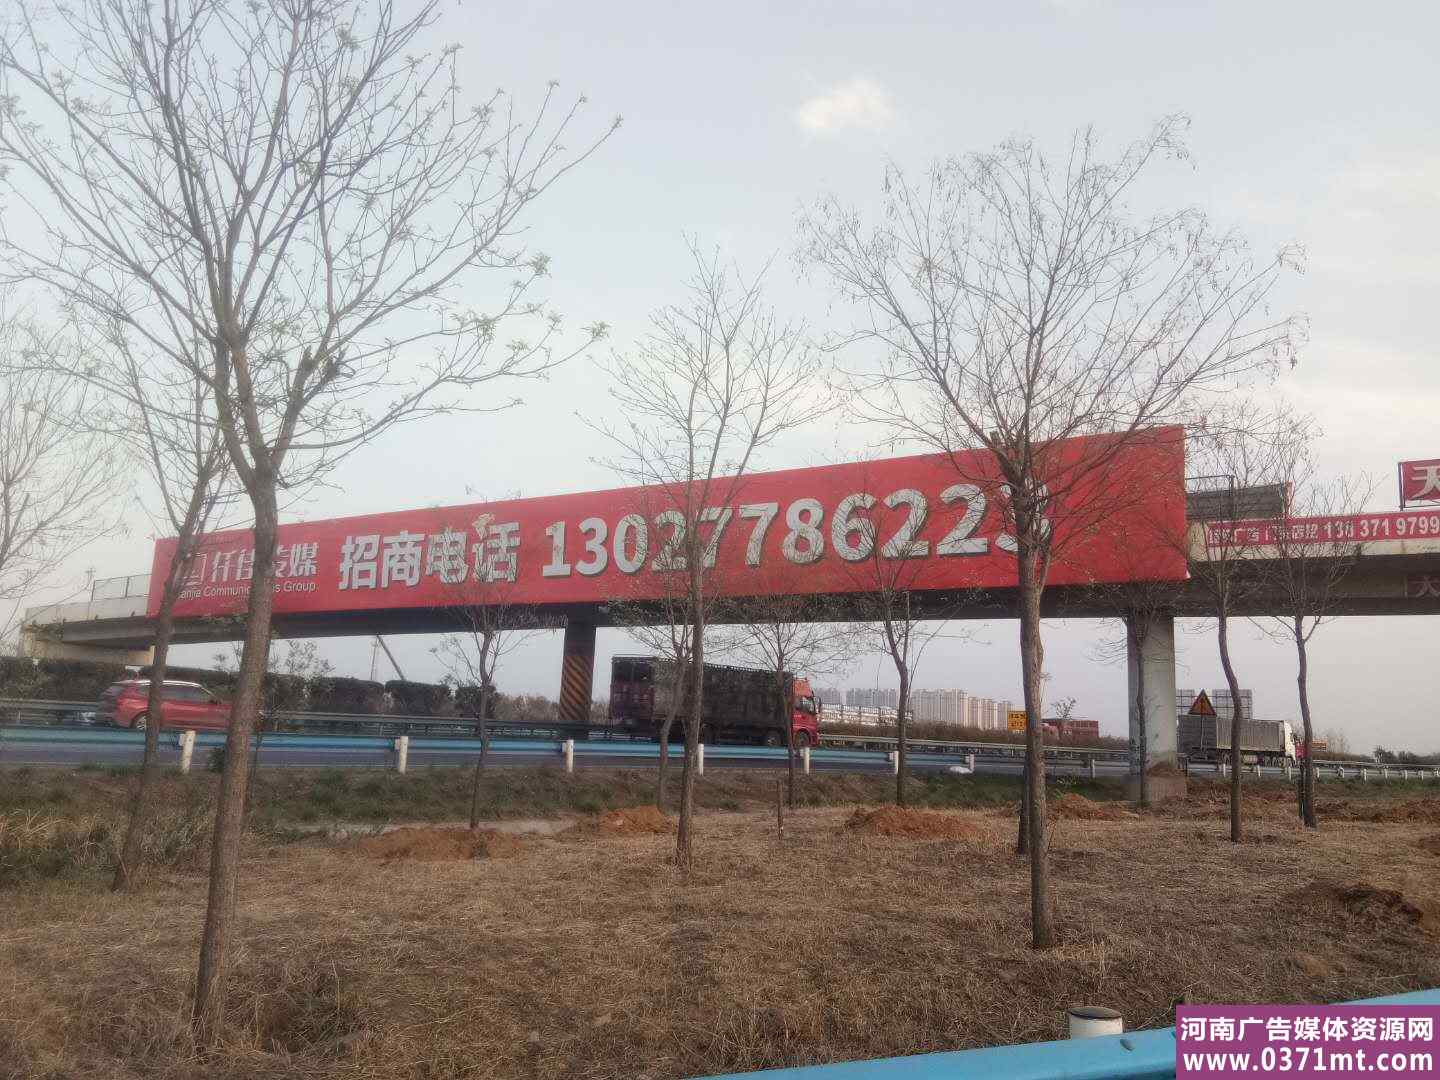 郑州京港澳高速G4南三环交叉口跨路广告牌